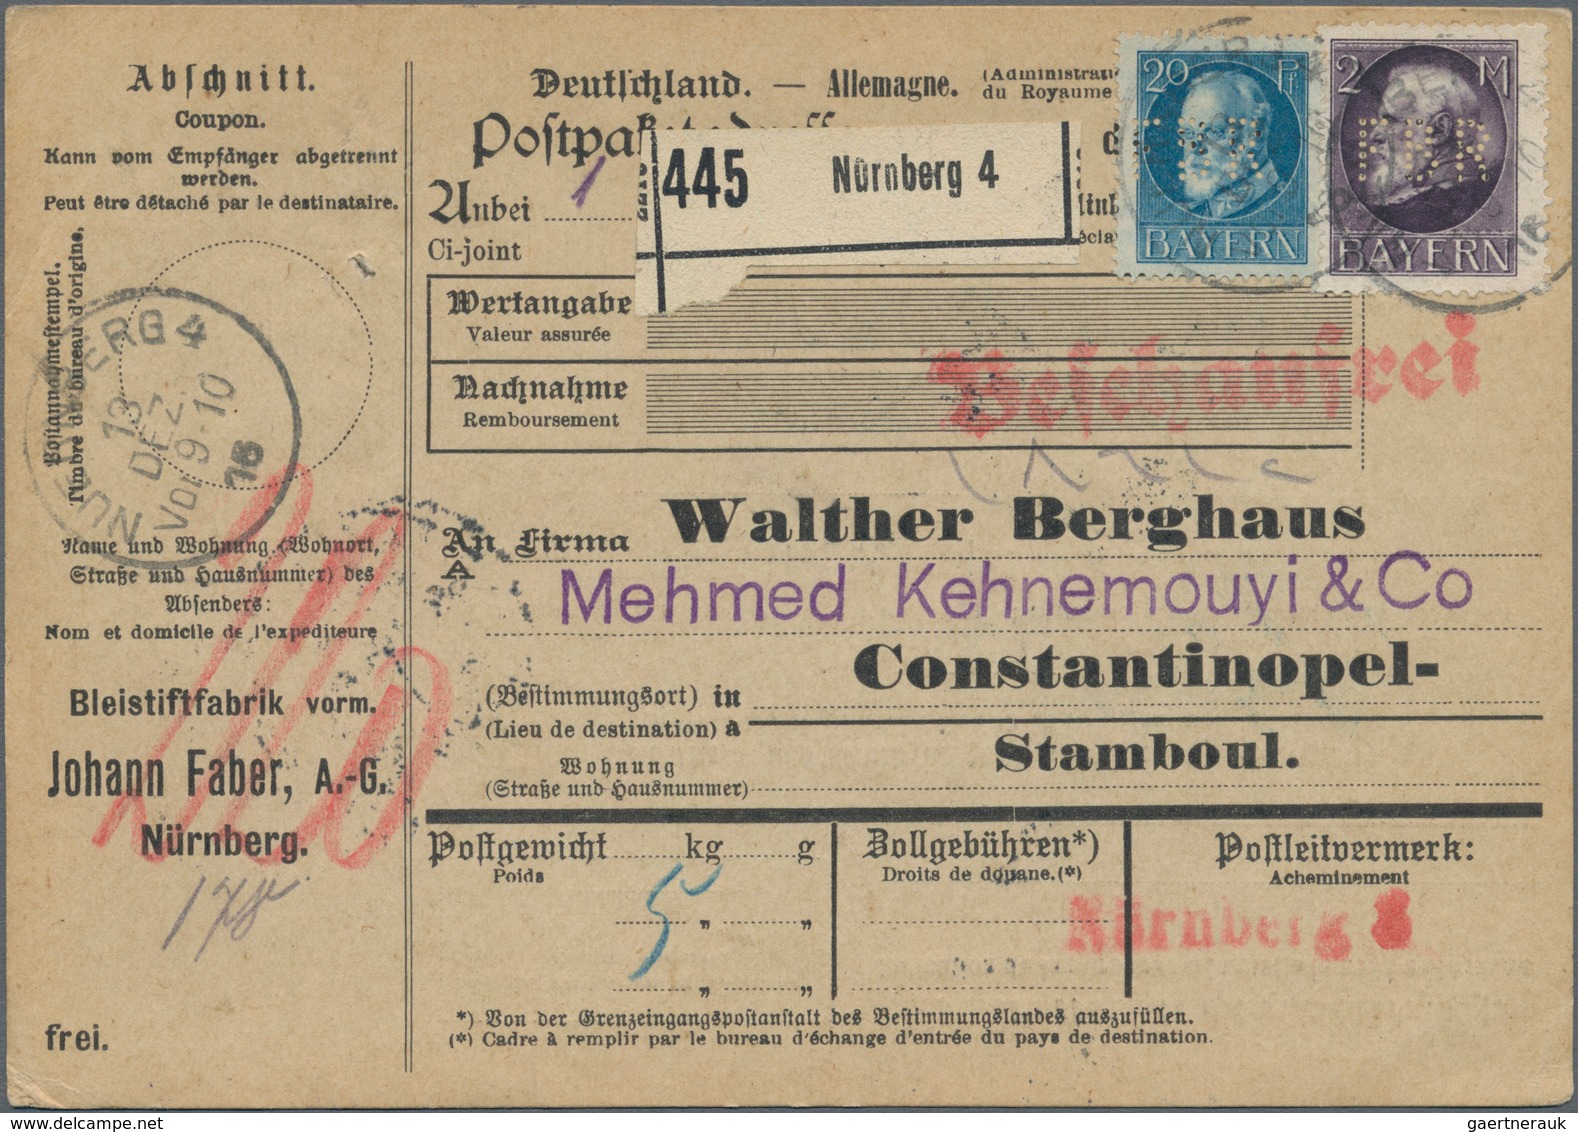 Bayern - Marken und Briefe: 1850/1920, interessante Sammlung mit ca.270 Briefen, Karten und Ganzsach